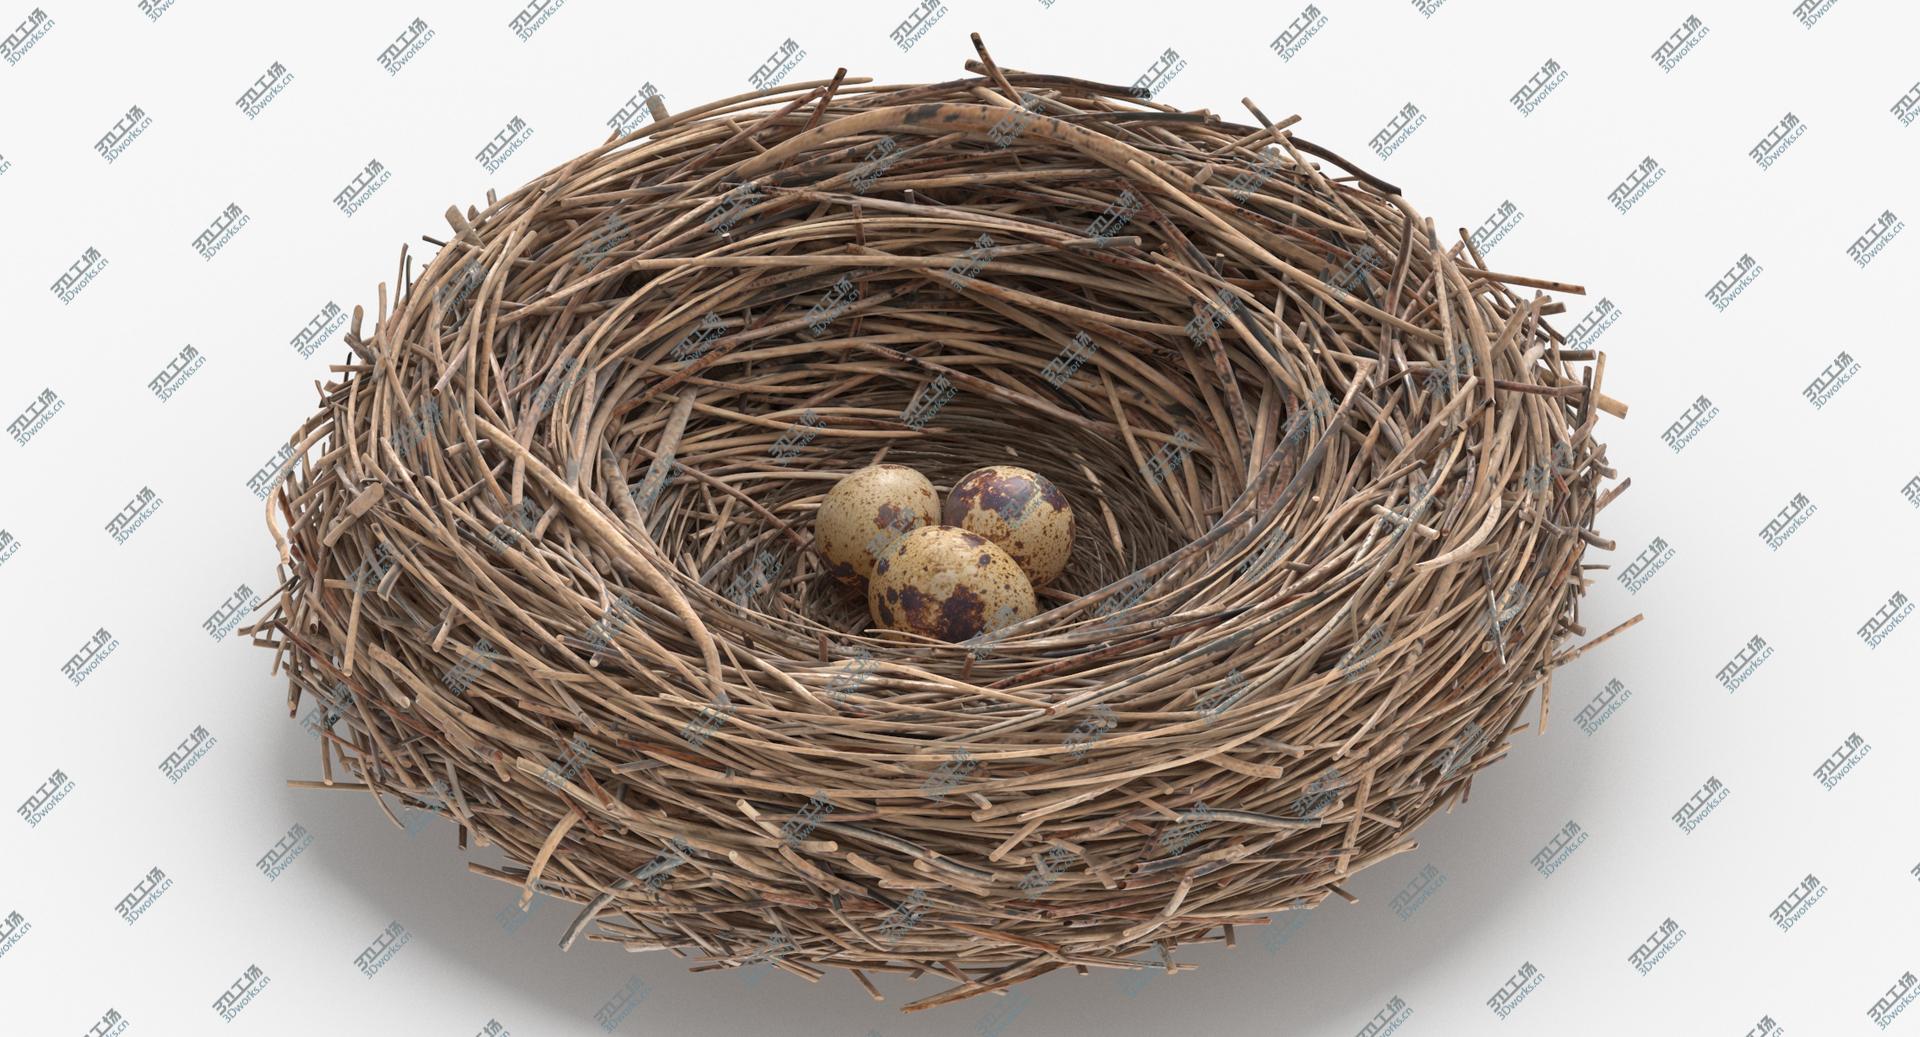 images/goods_img/2021040162/3D Bird Nest 03 With Quail Eggs model/3.jpg